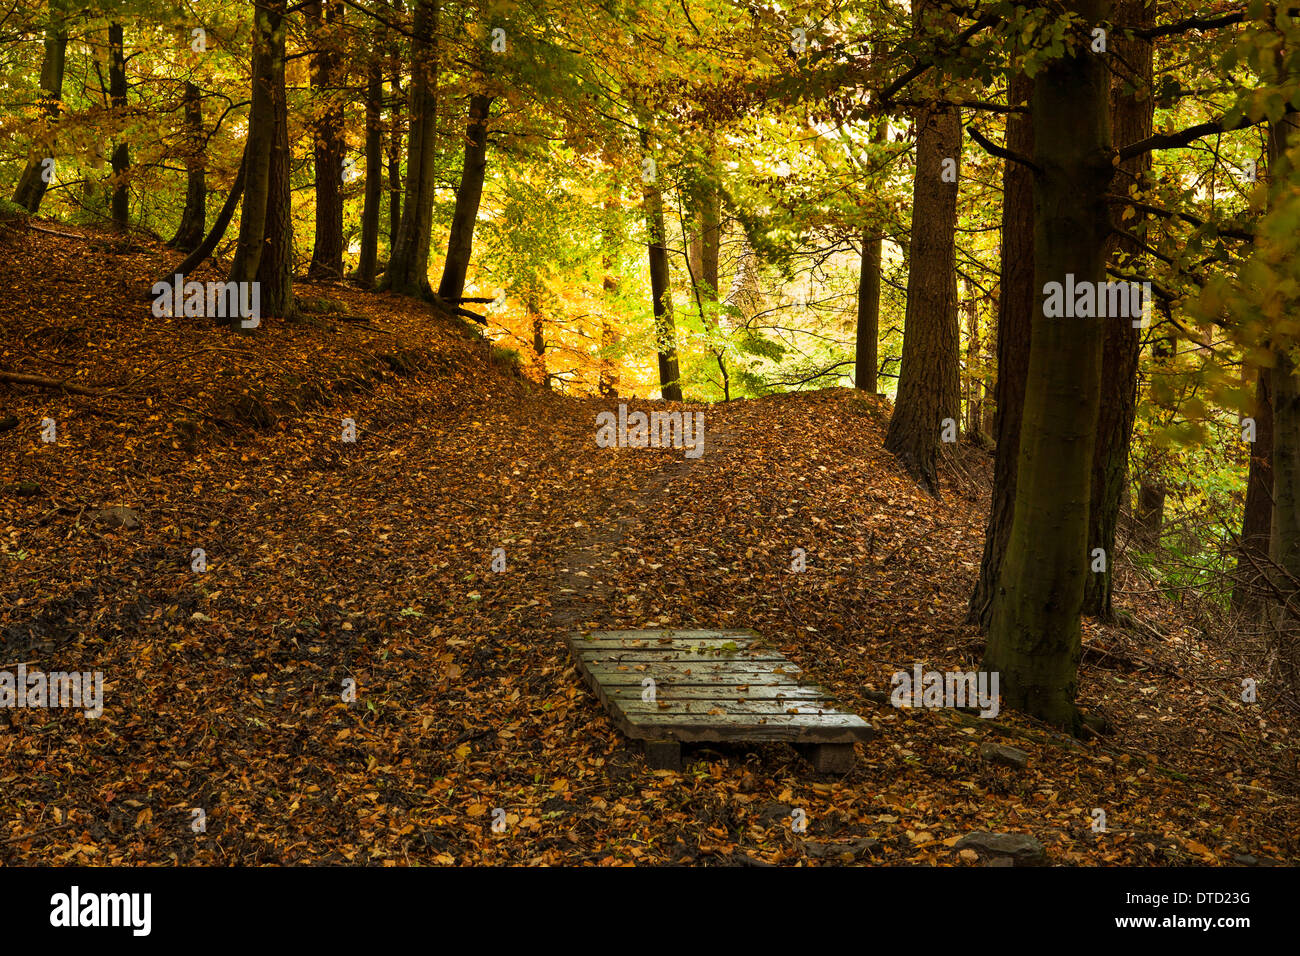 Bois et couleurs d'automne à Bowlees réserve naturelle, la région de Teesdale, Angleterre Banque D'Images